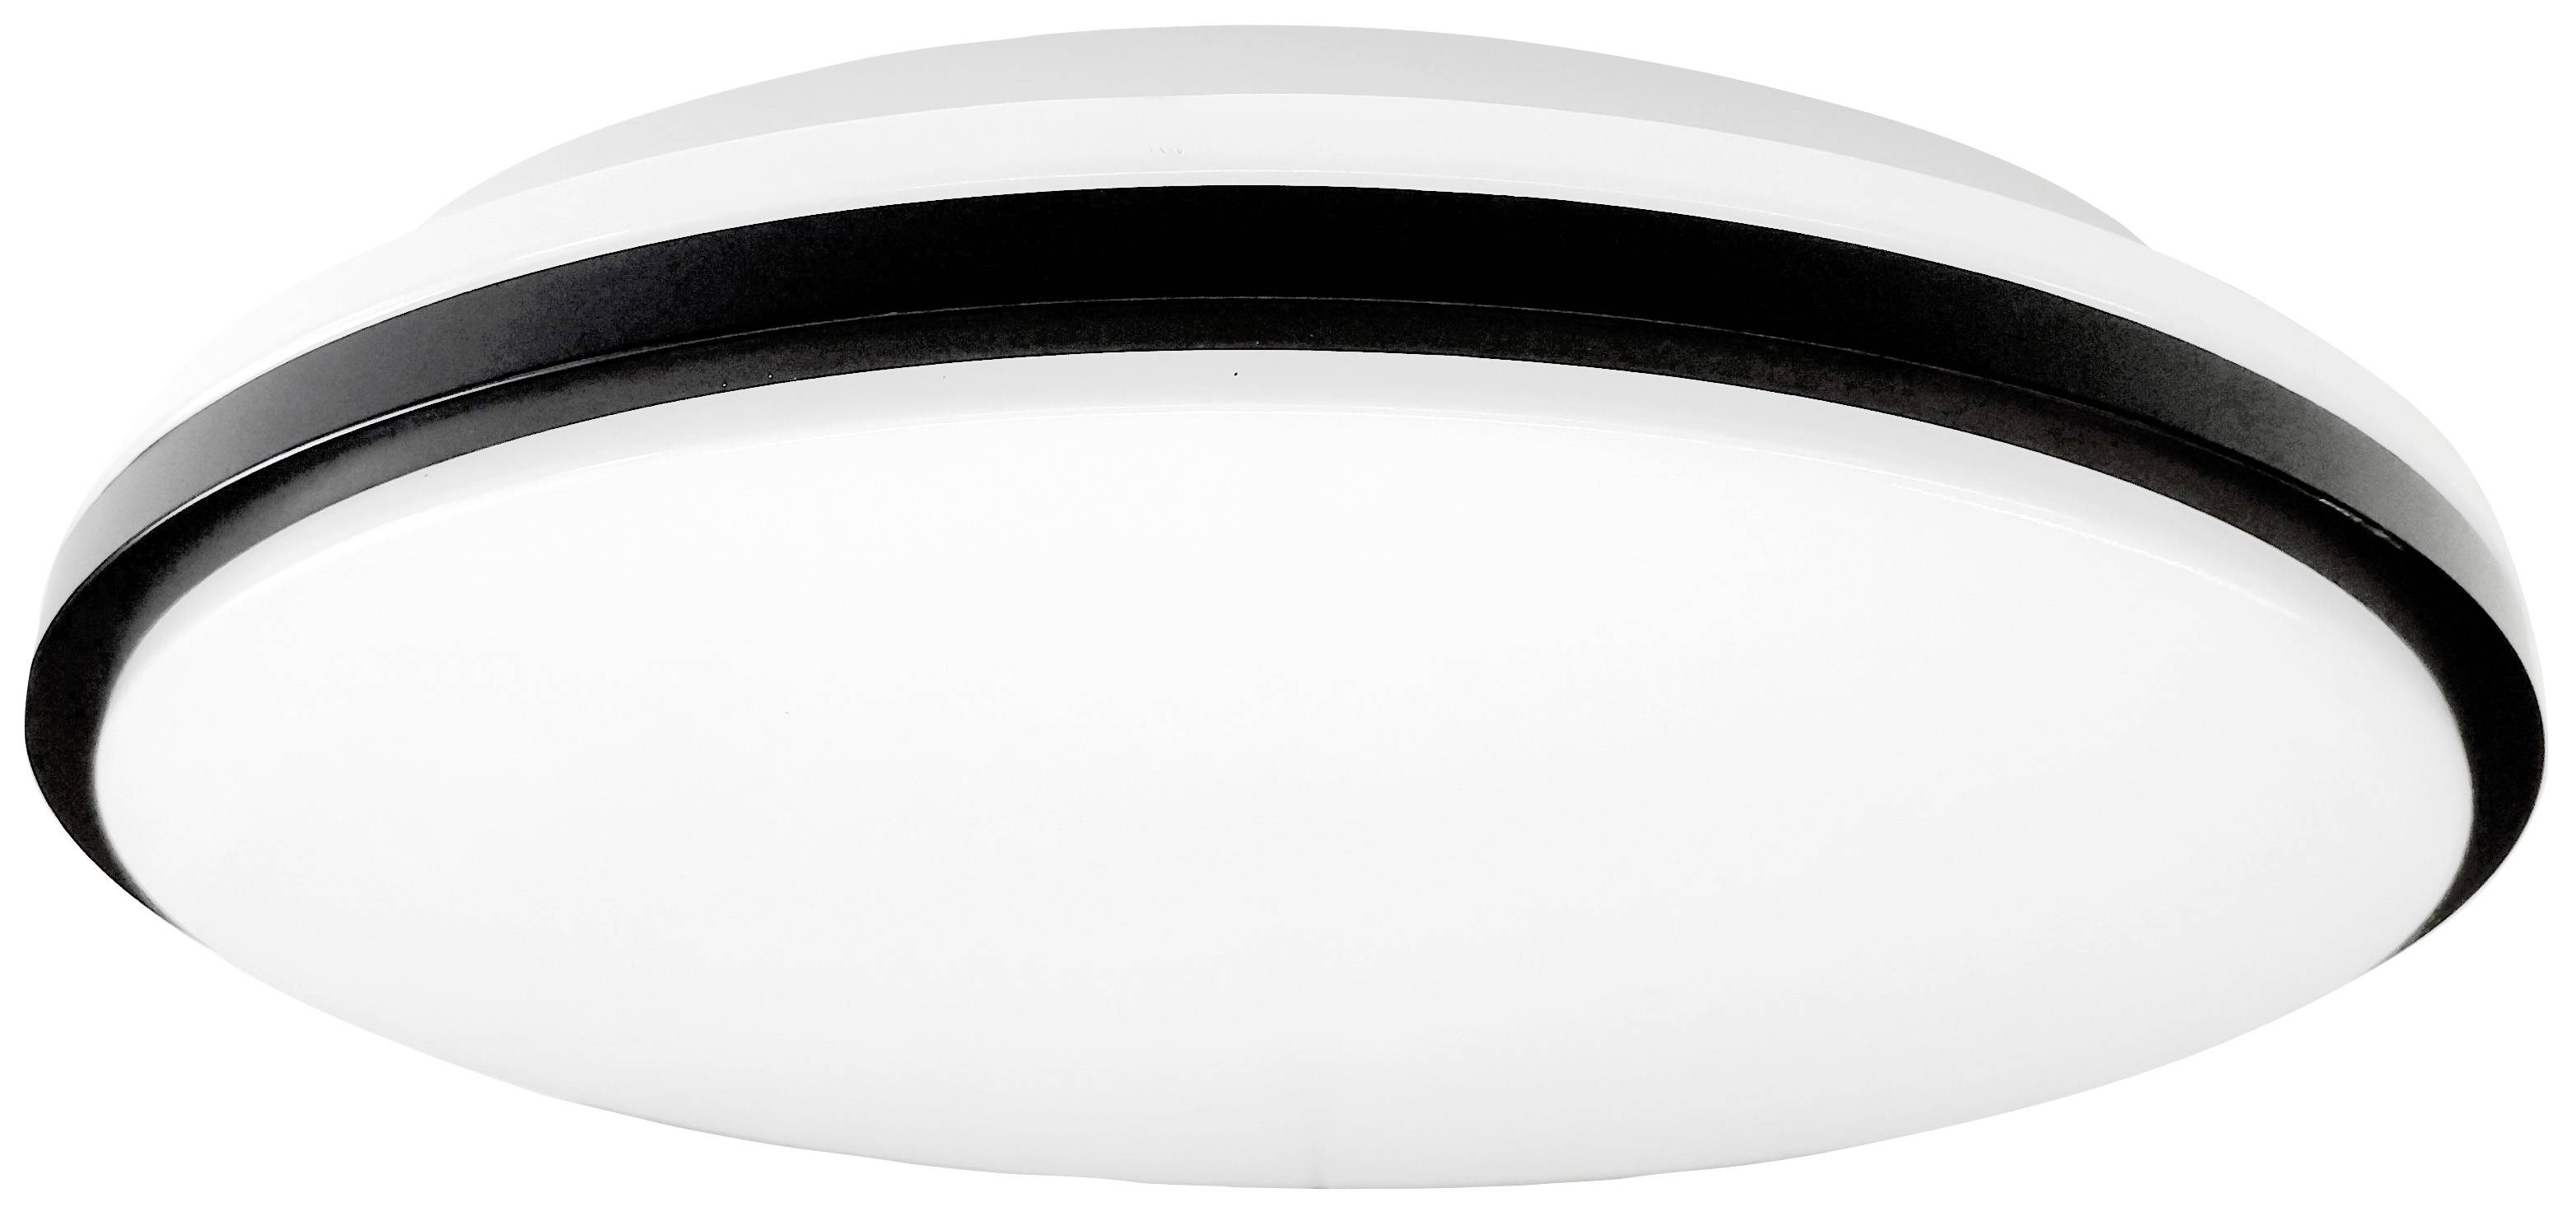 MÜLLER LICHT Müller-Licht 21000070 Taro Round 30 LED-Deckenleuchte LED 18 W Weiß, Schwarz